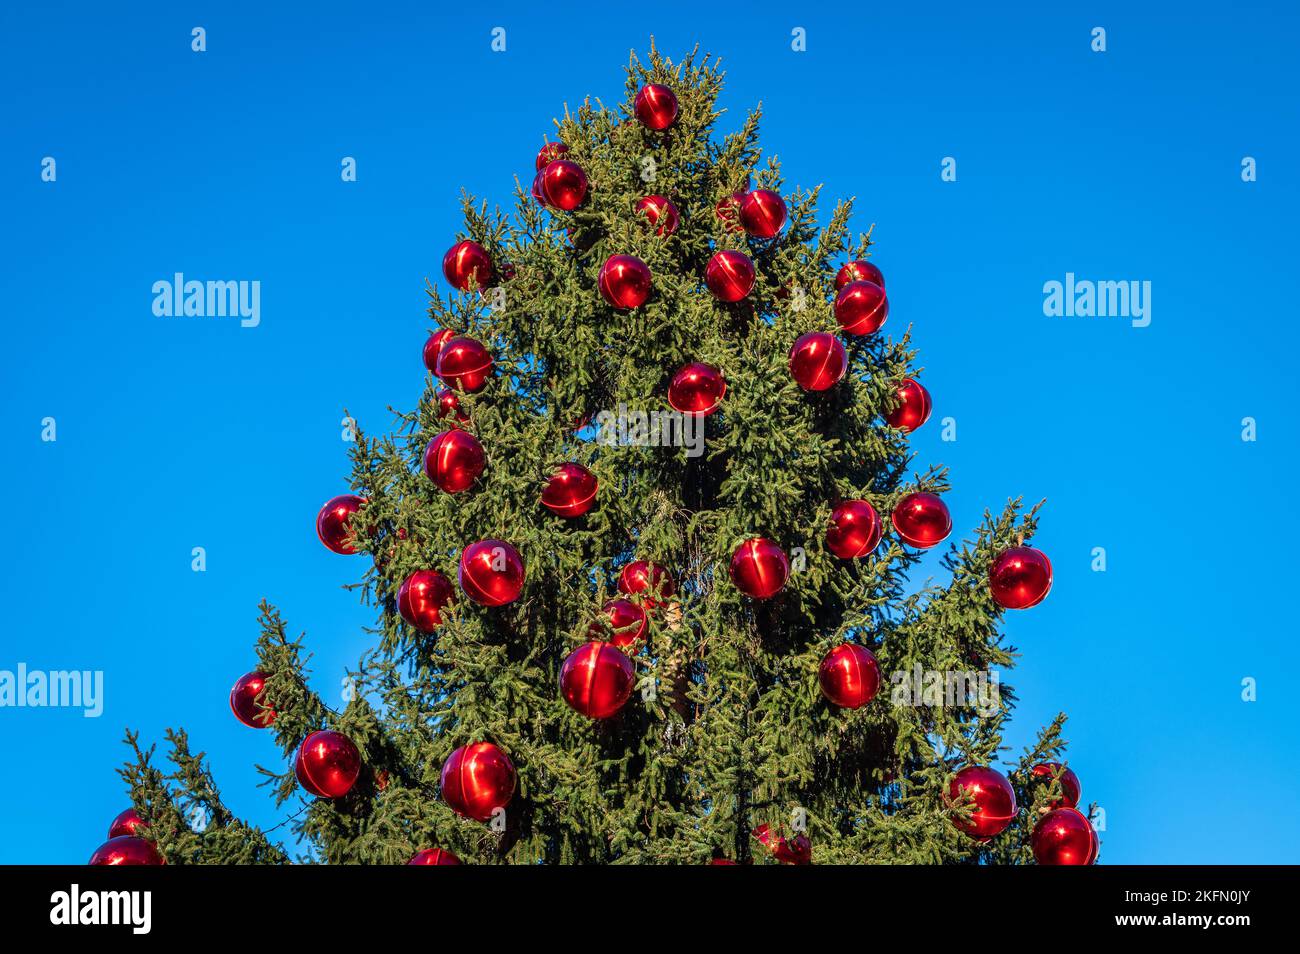 Natale Trento: Albero di Natale decorato con palline rosse con riflessi - Trentino Alto Adige - Italia settentrionale Foto Stock